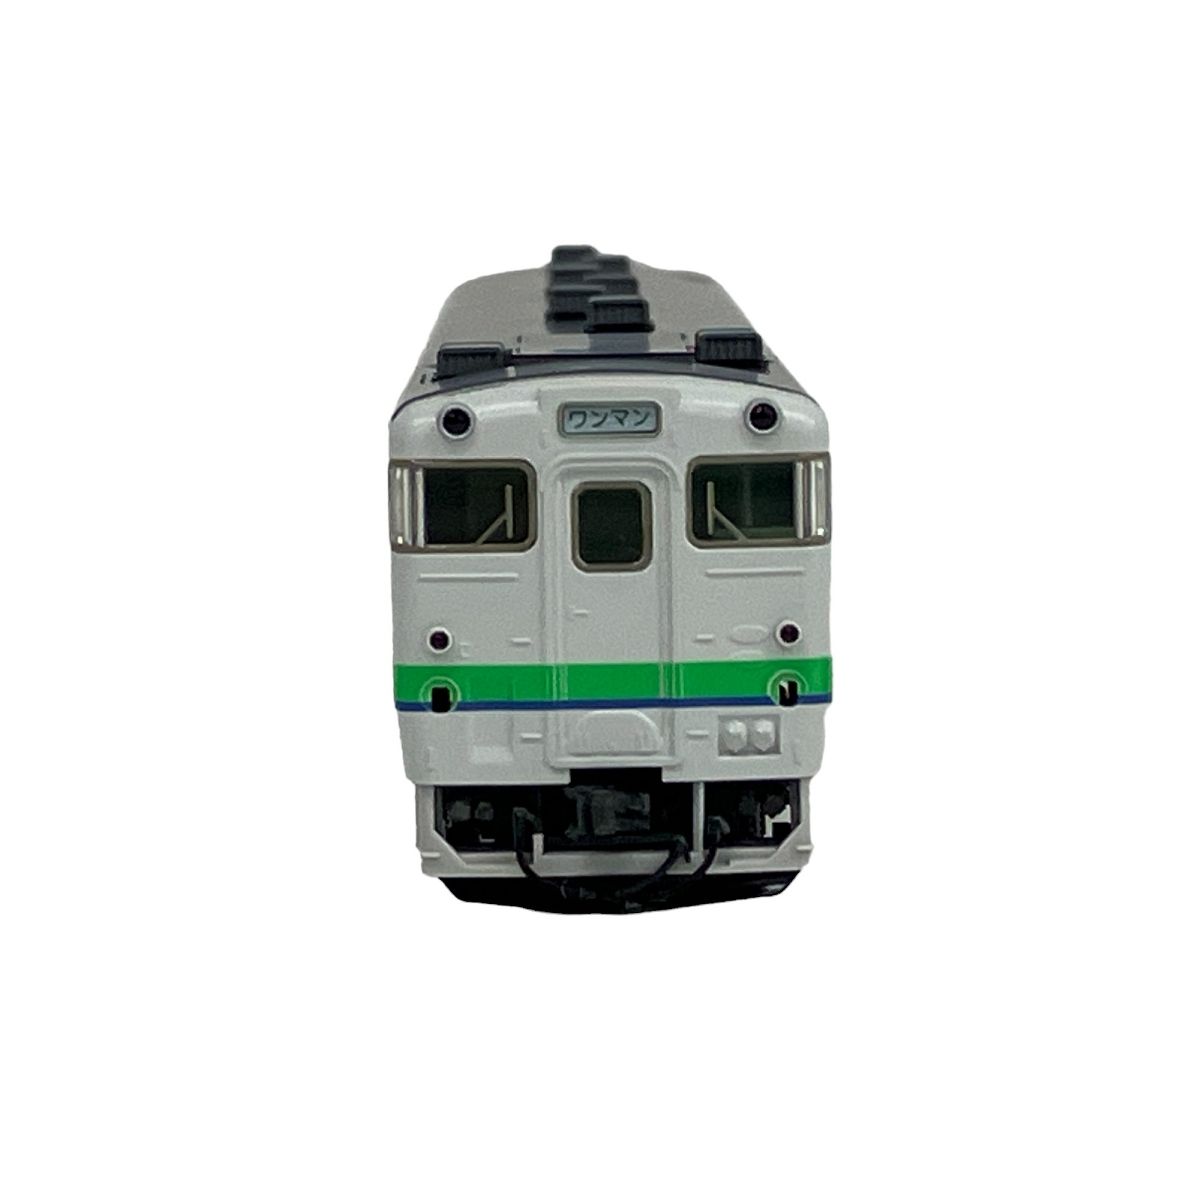 【動作保証】TOMIX 9411 JRディーゼルカー キハ40 1700形(M) Nゲージ 鉄道模型 トミックス  S8965347